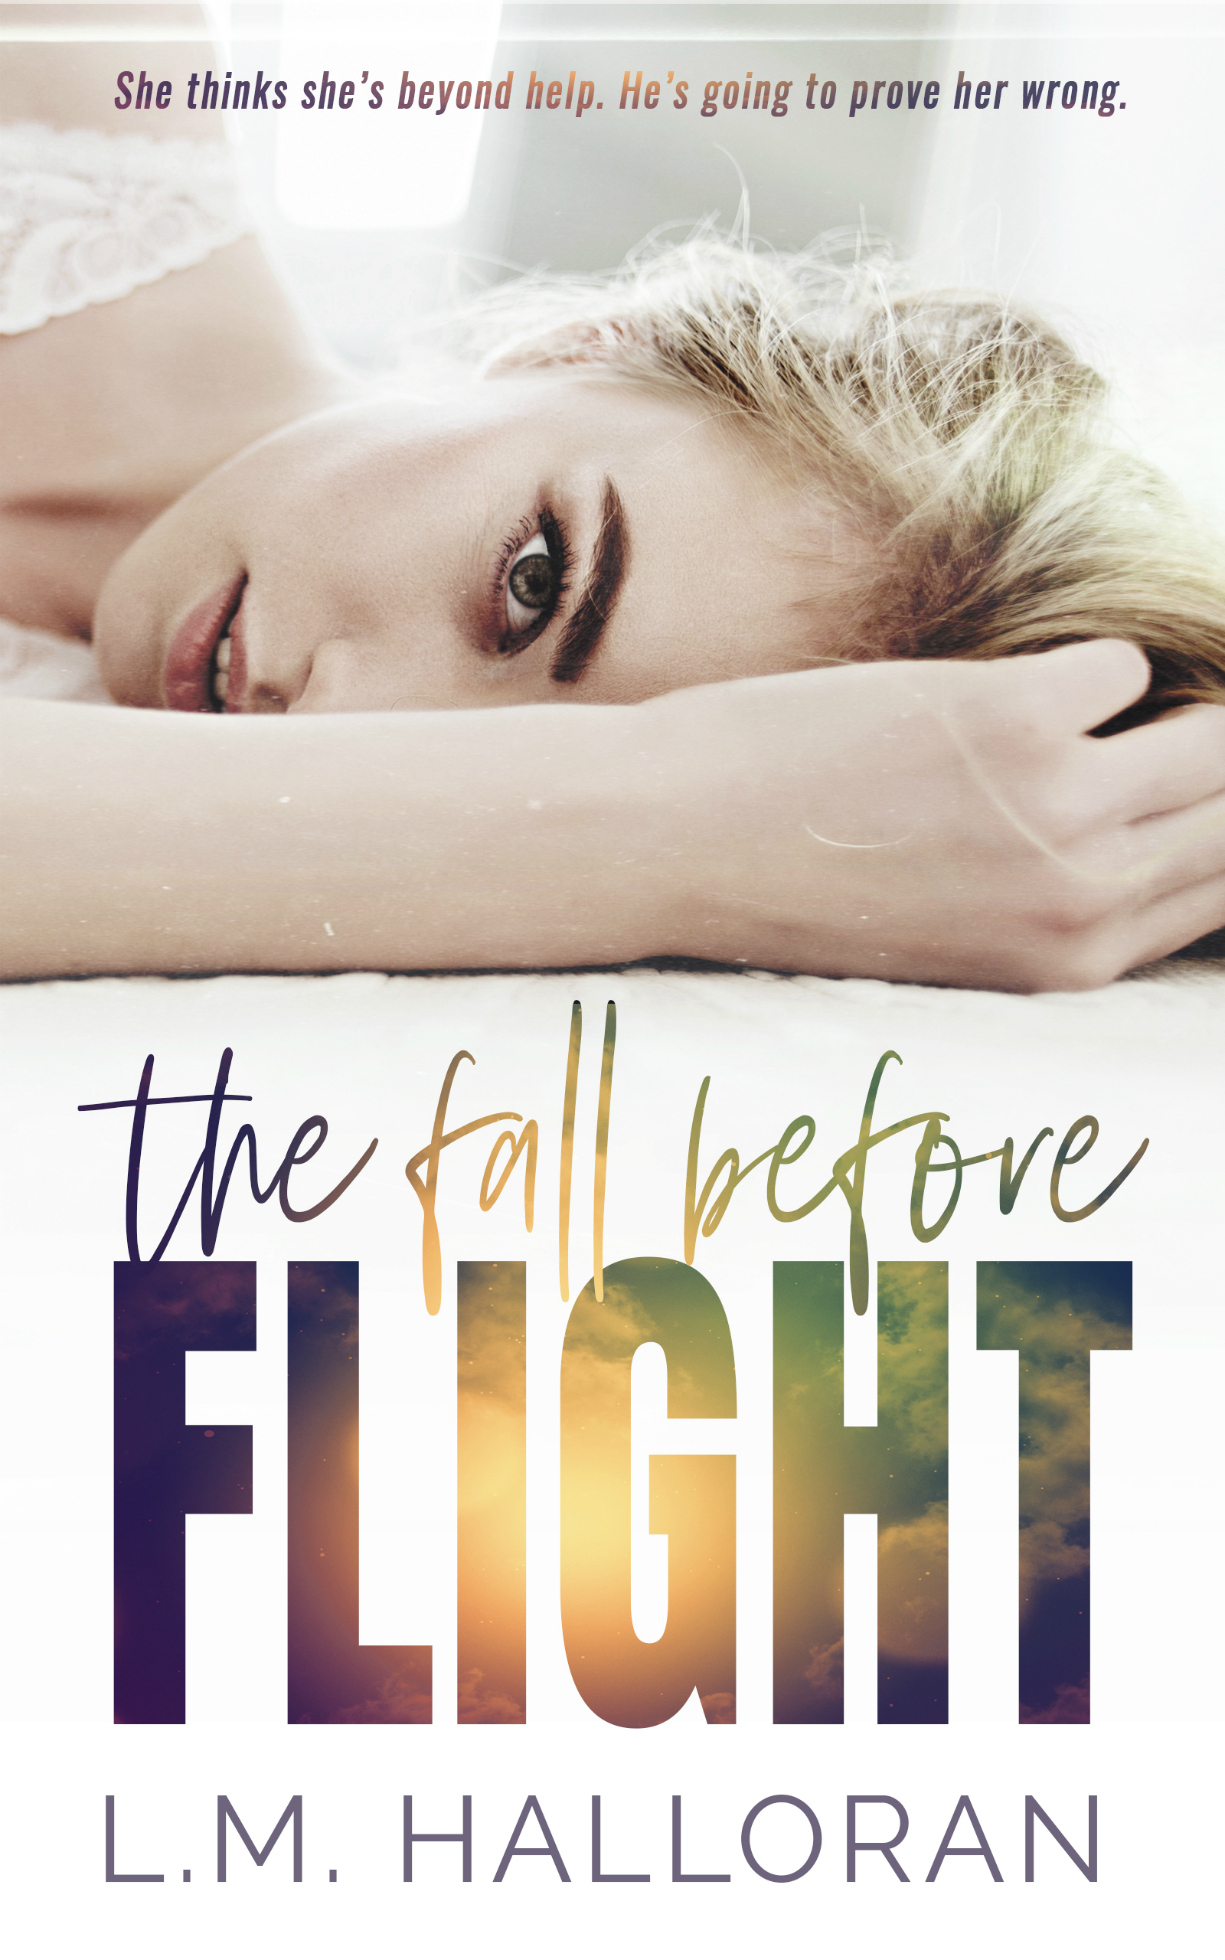 fall flight 174 dvd